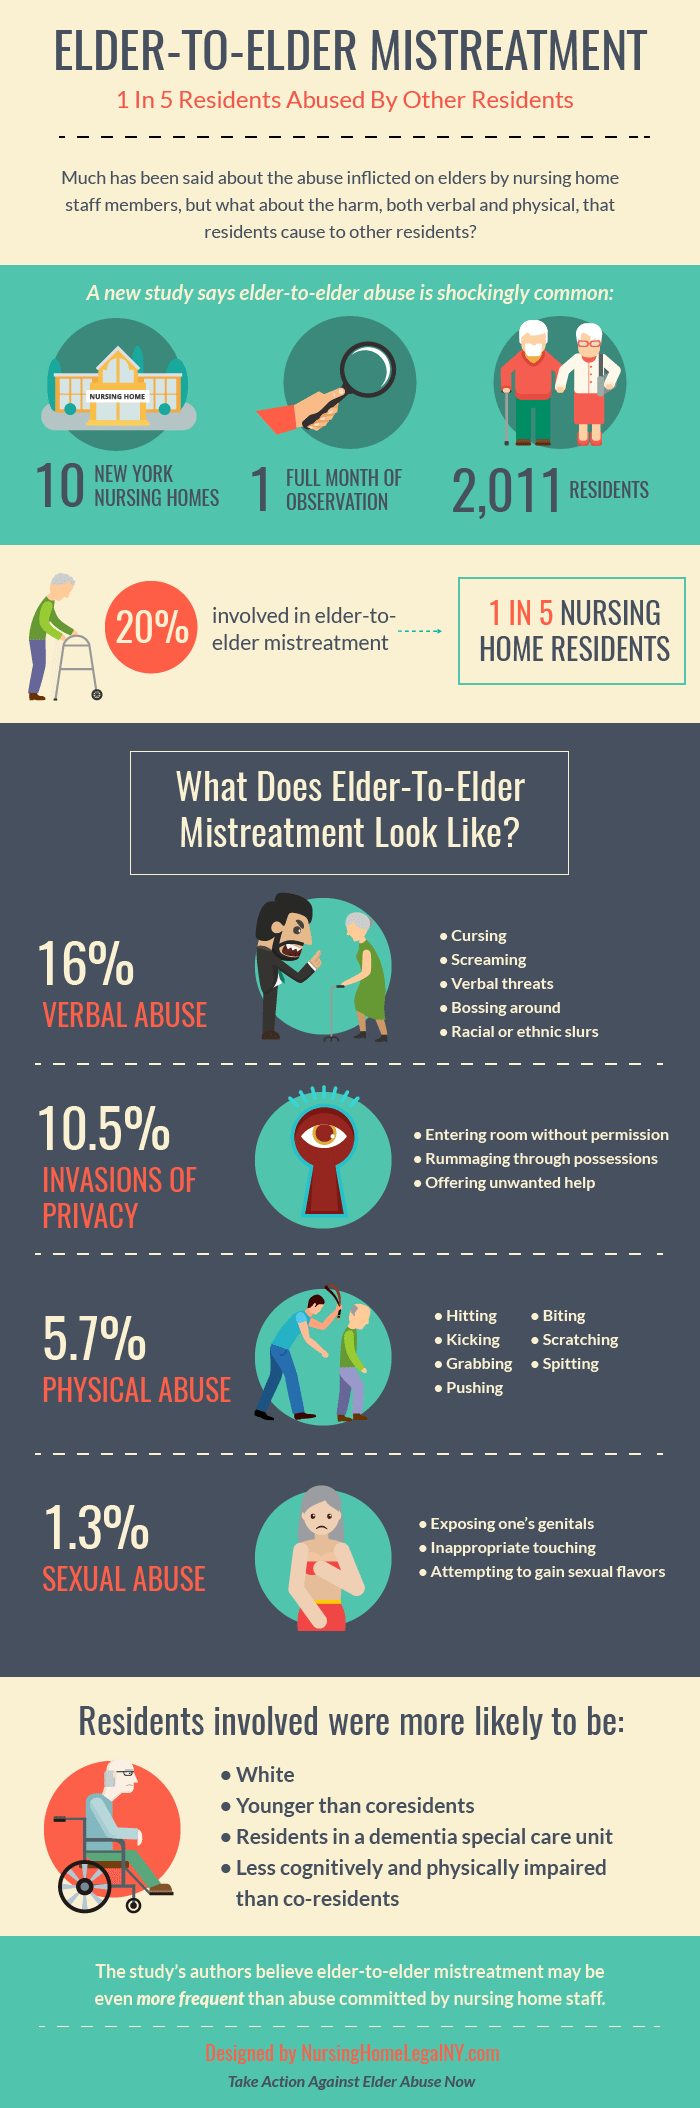 Elder to Elder Mistreatment